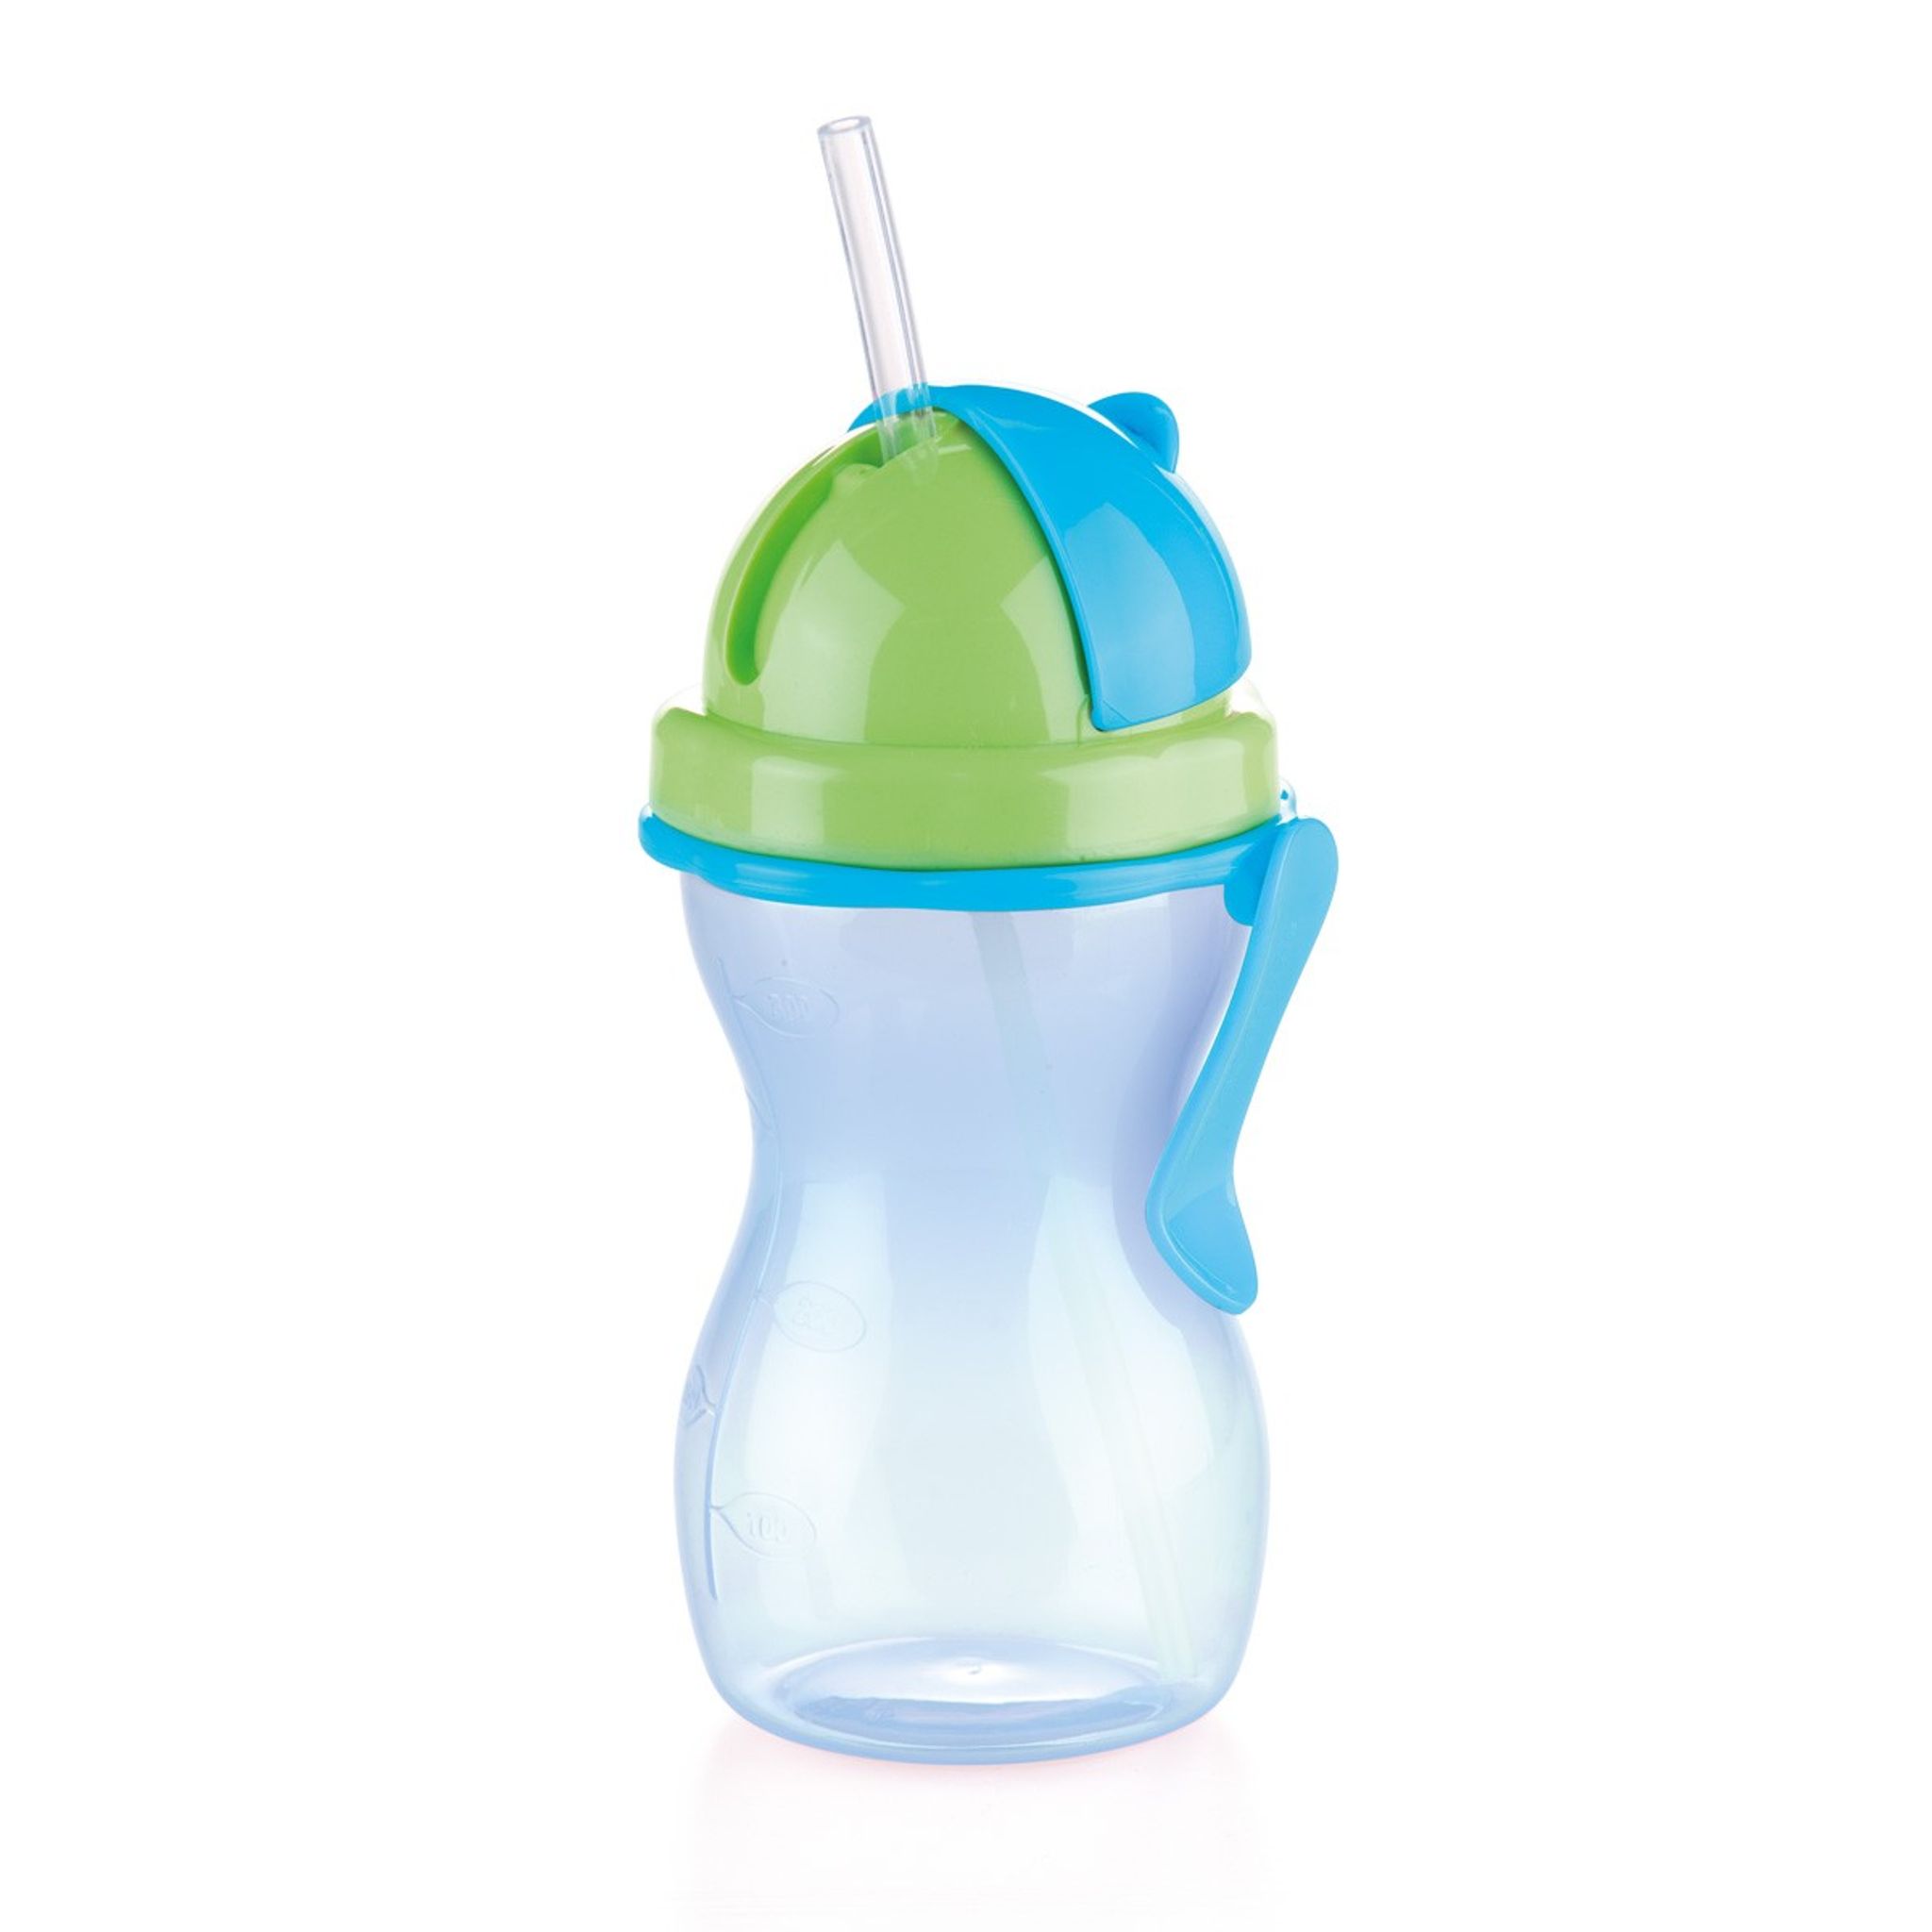 Detská fľaša so slamkou BAMBINI 300 ml, zelená, modrá